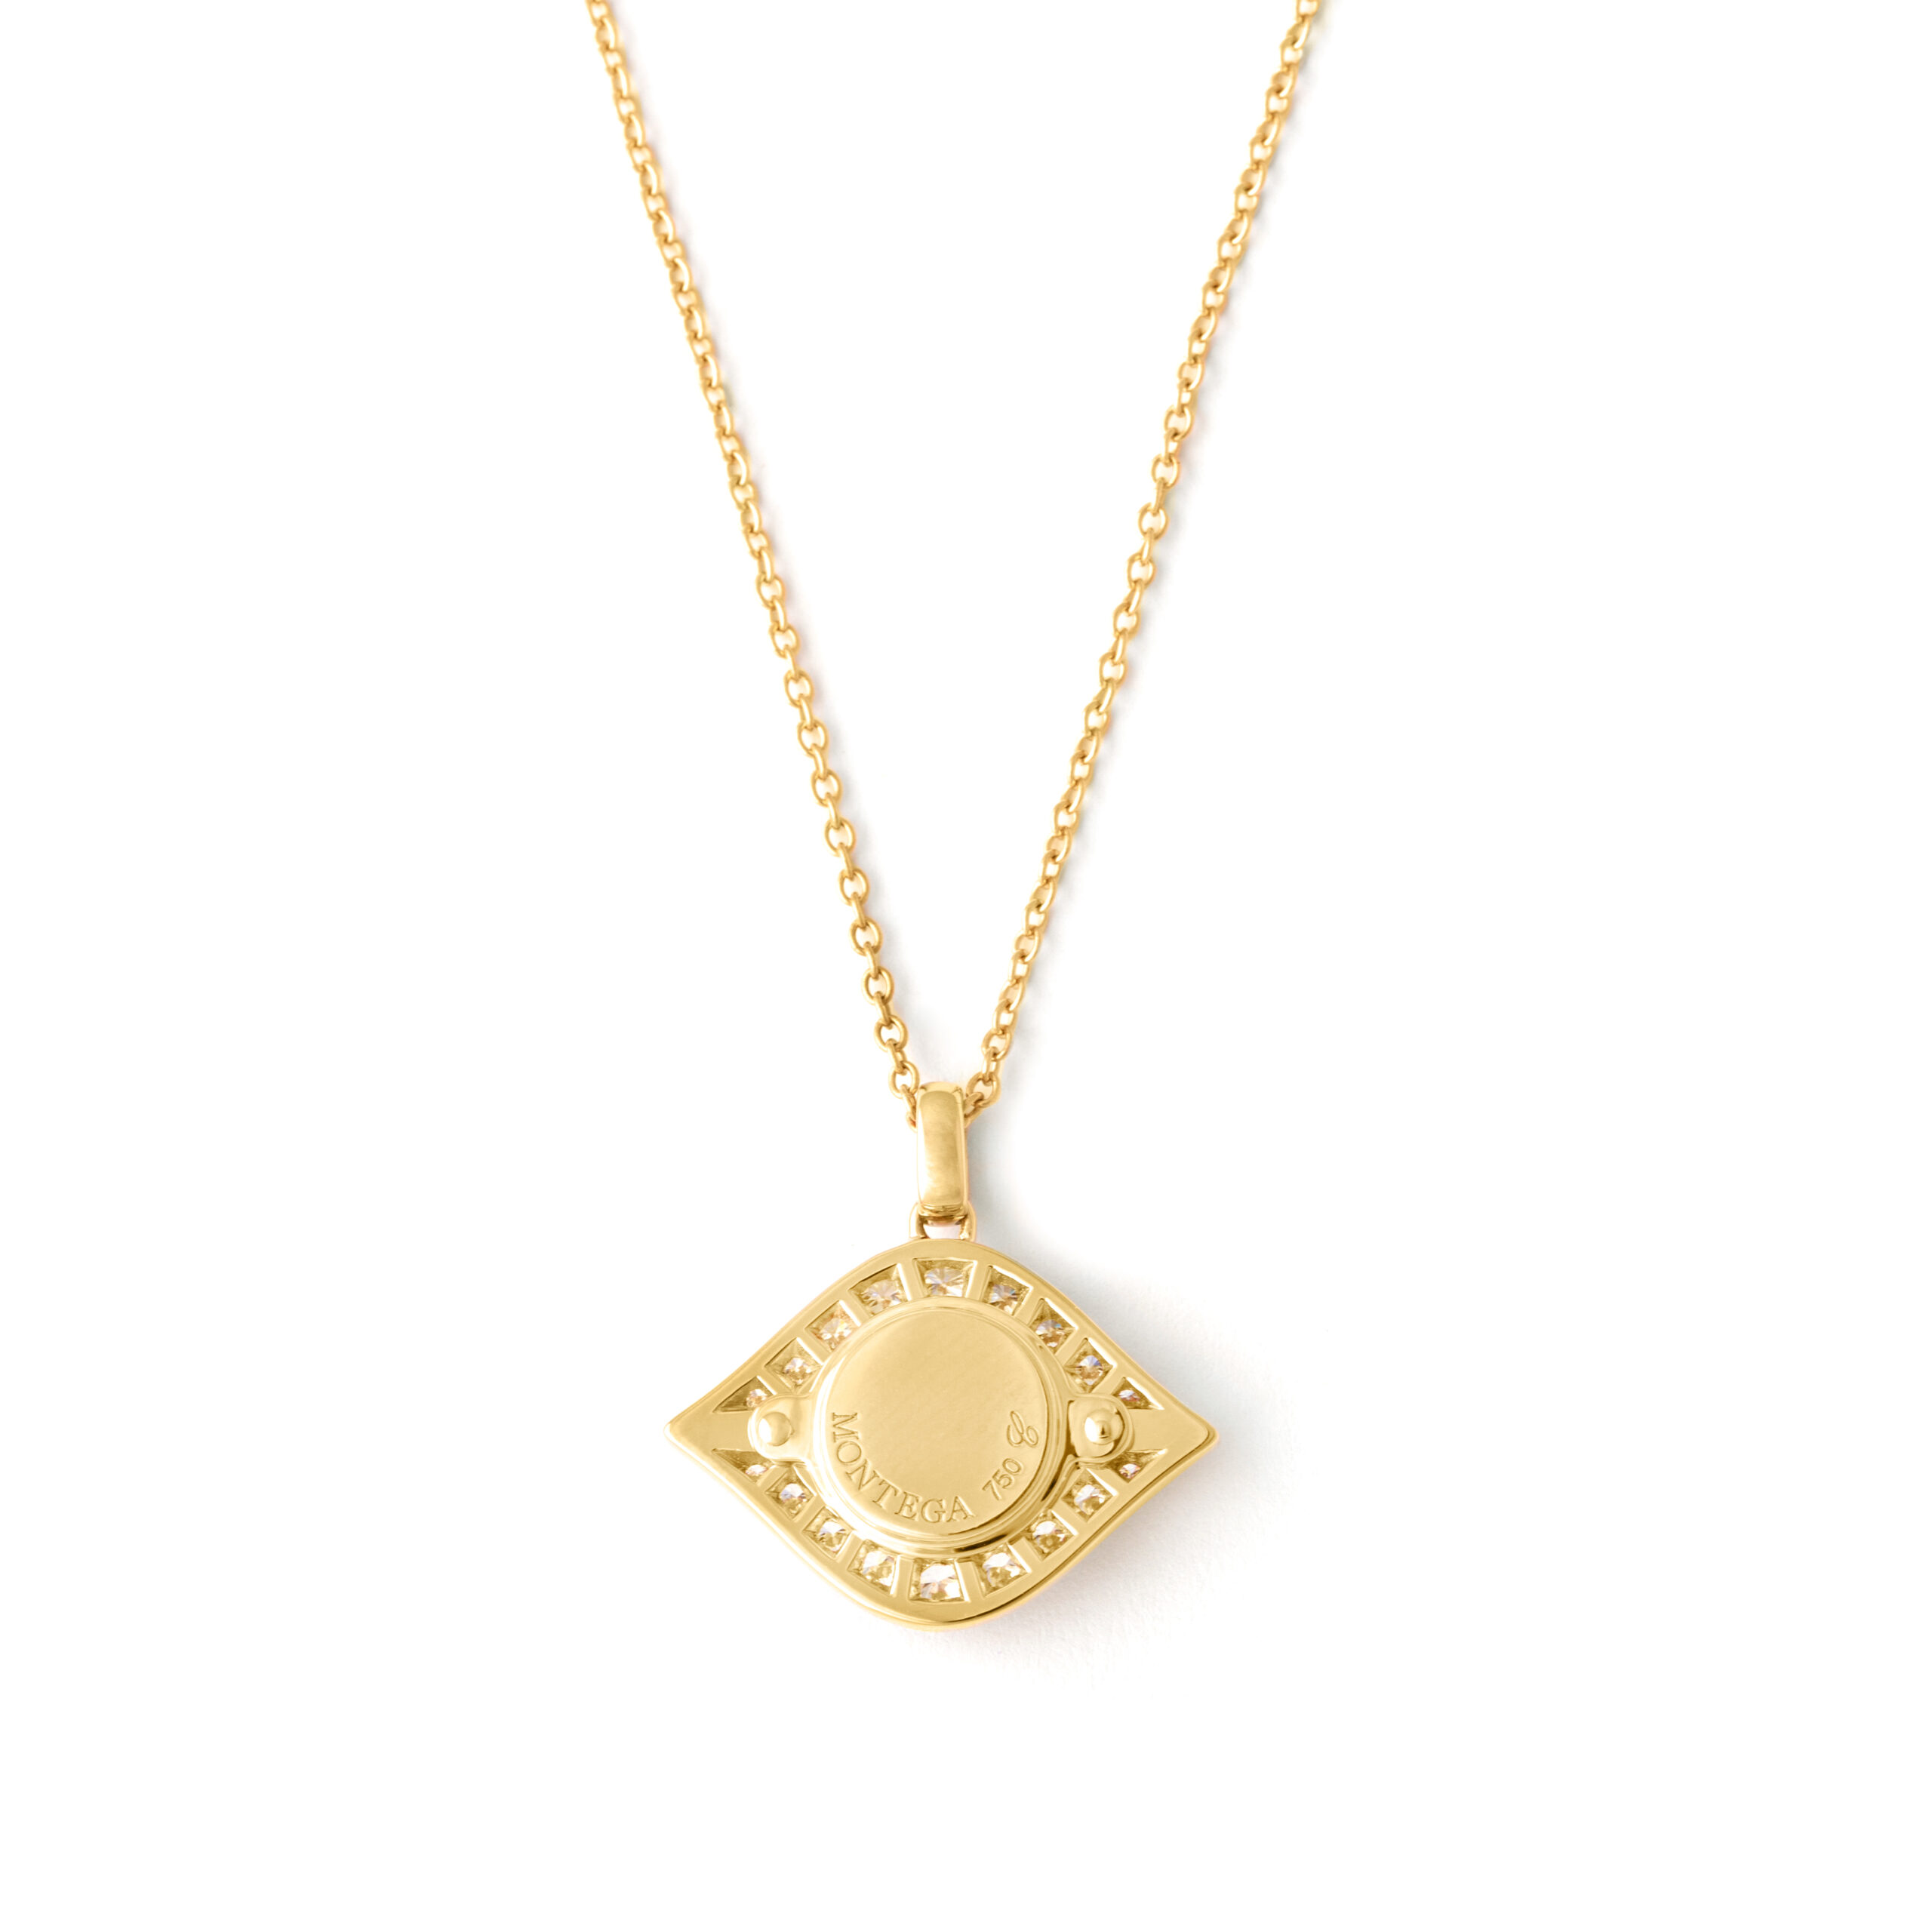 20l767_4-diamonds-necklace-eye-yellow-gold-18k-pendant